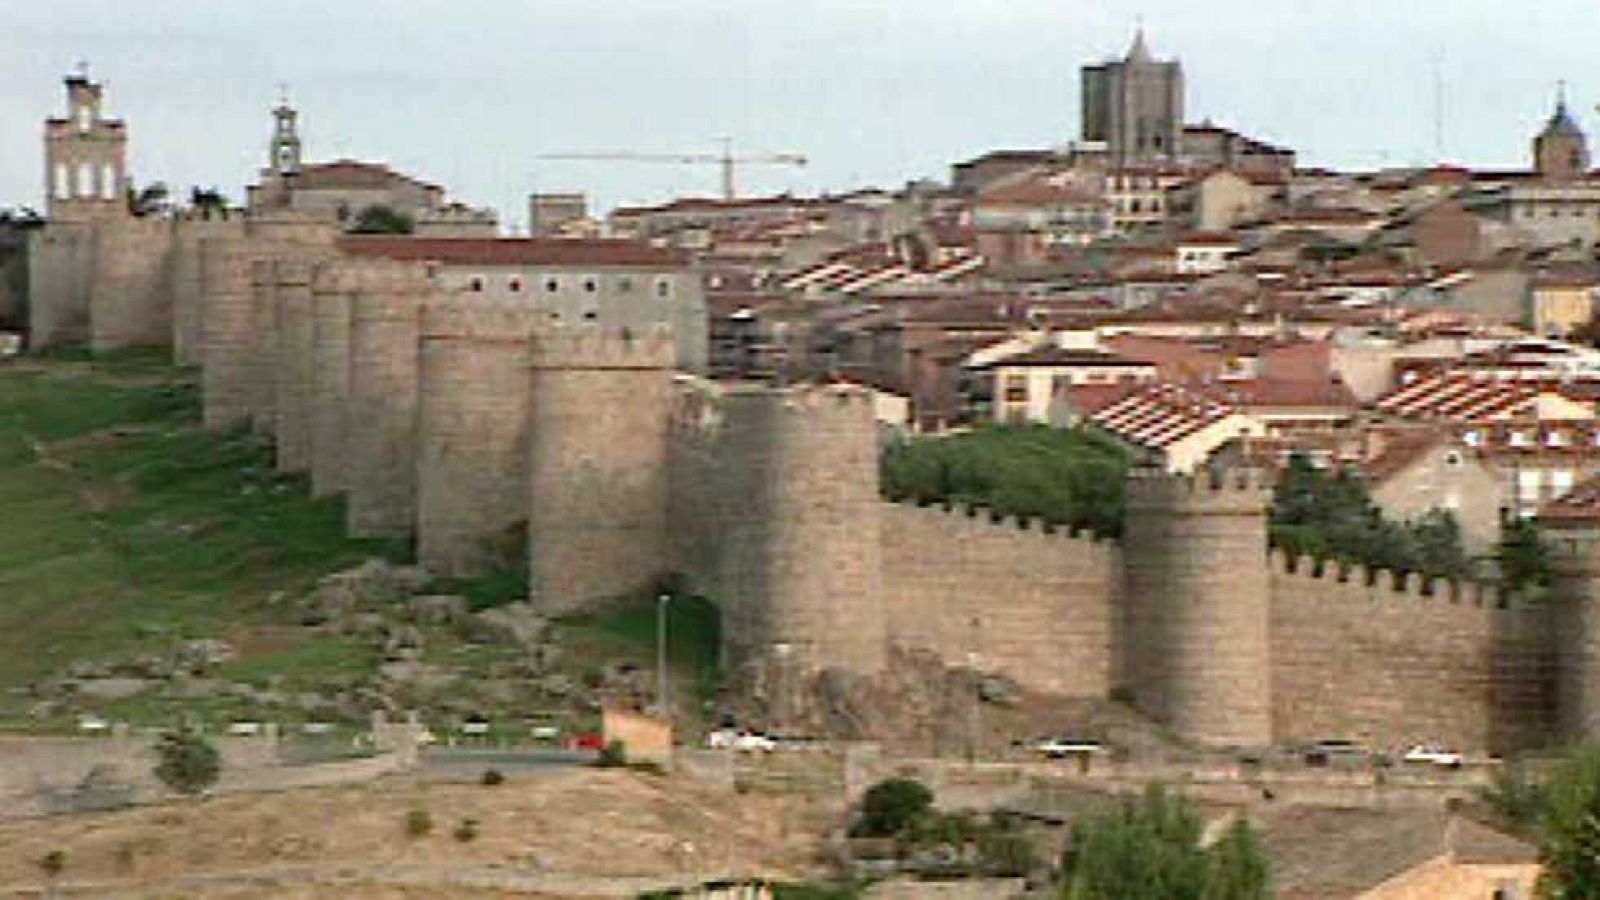 Paisajes del castellano - Ávila, los místicos y la ruta teresiana